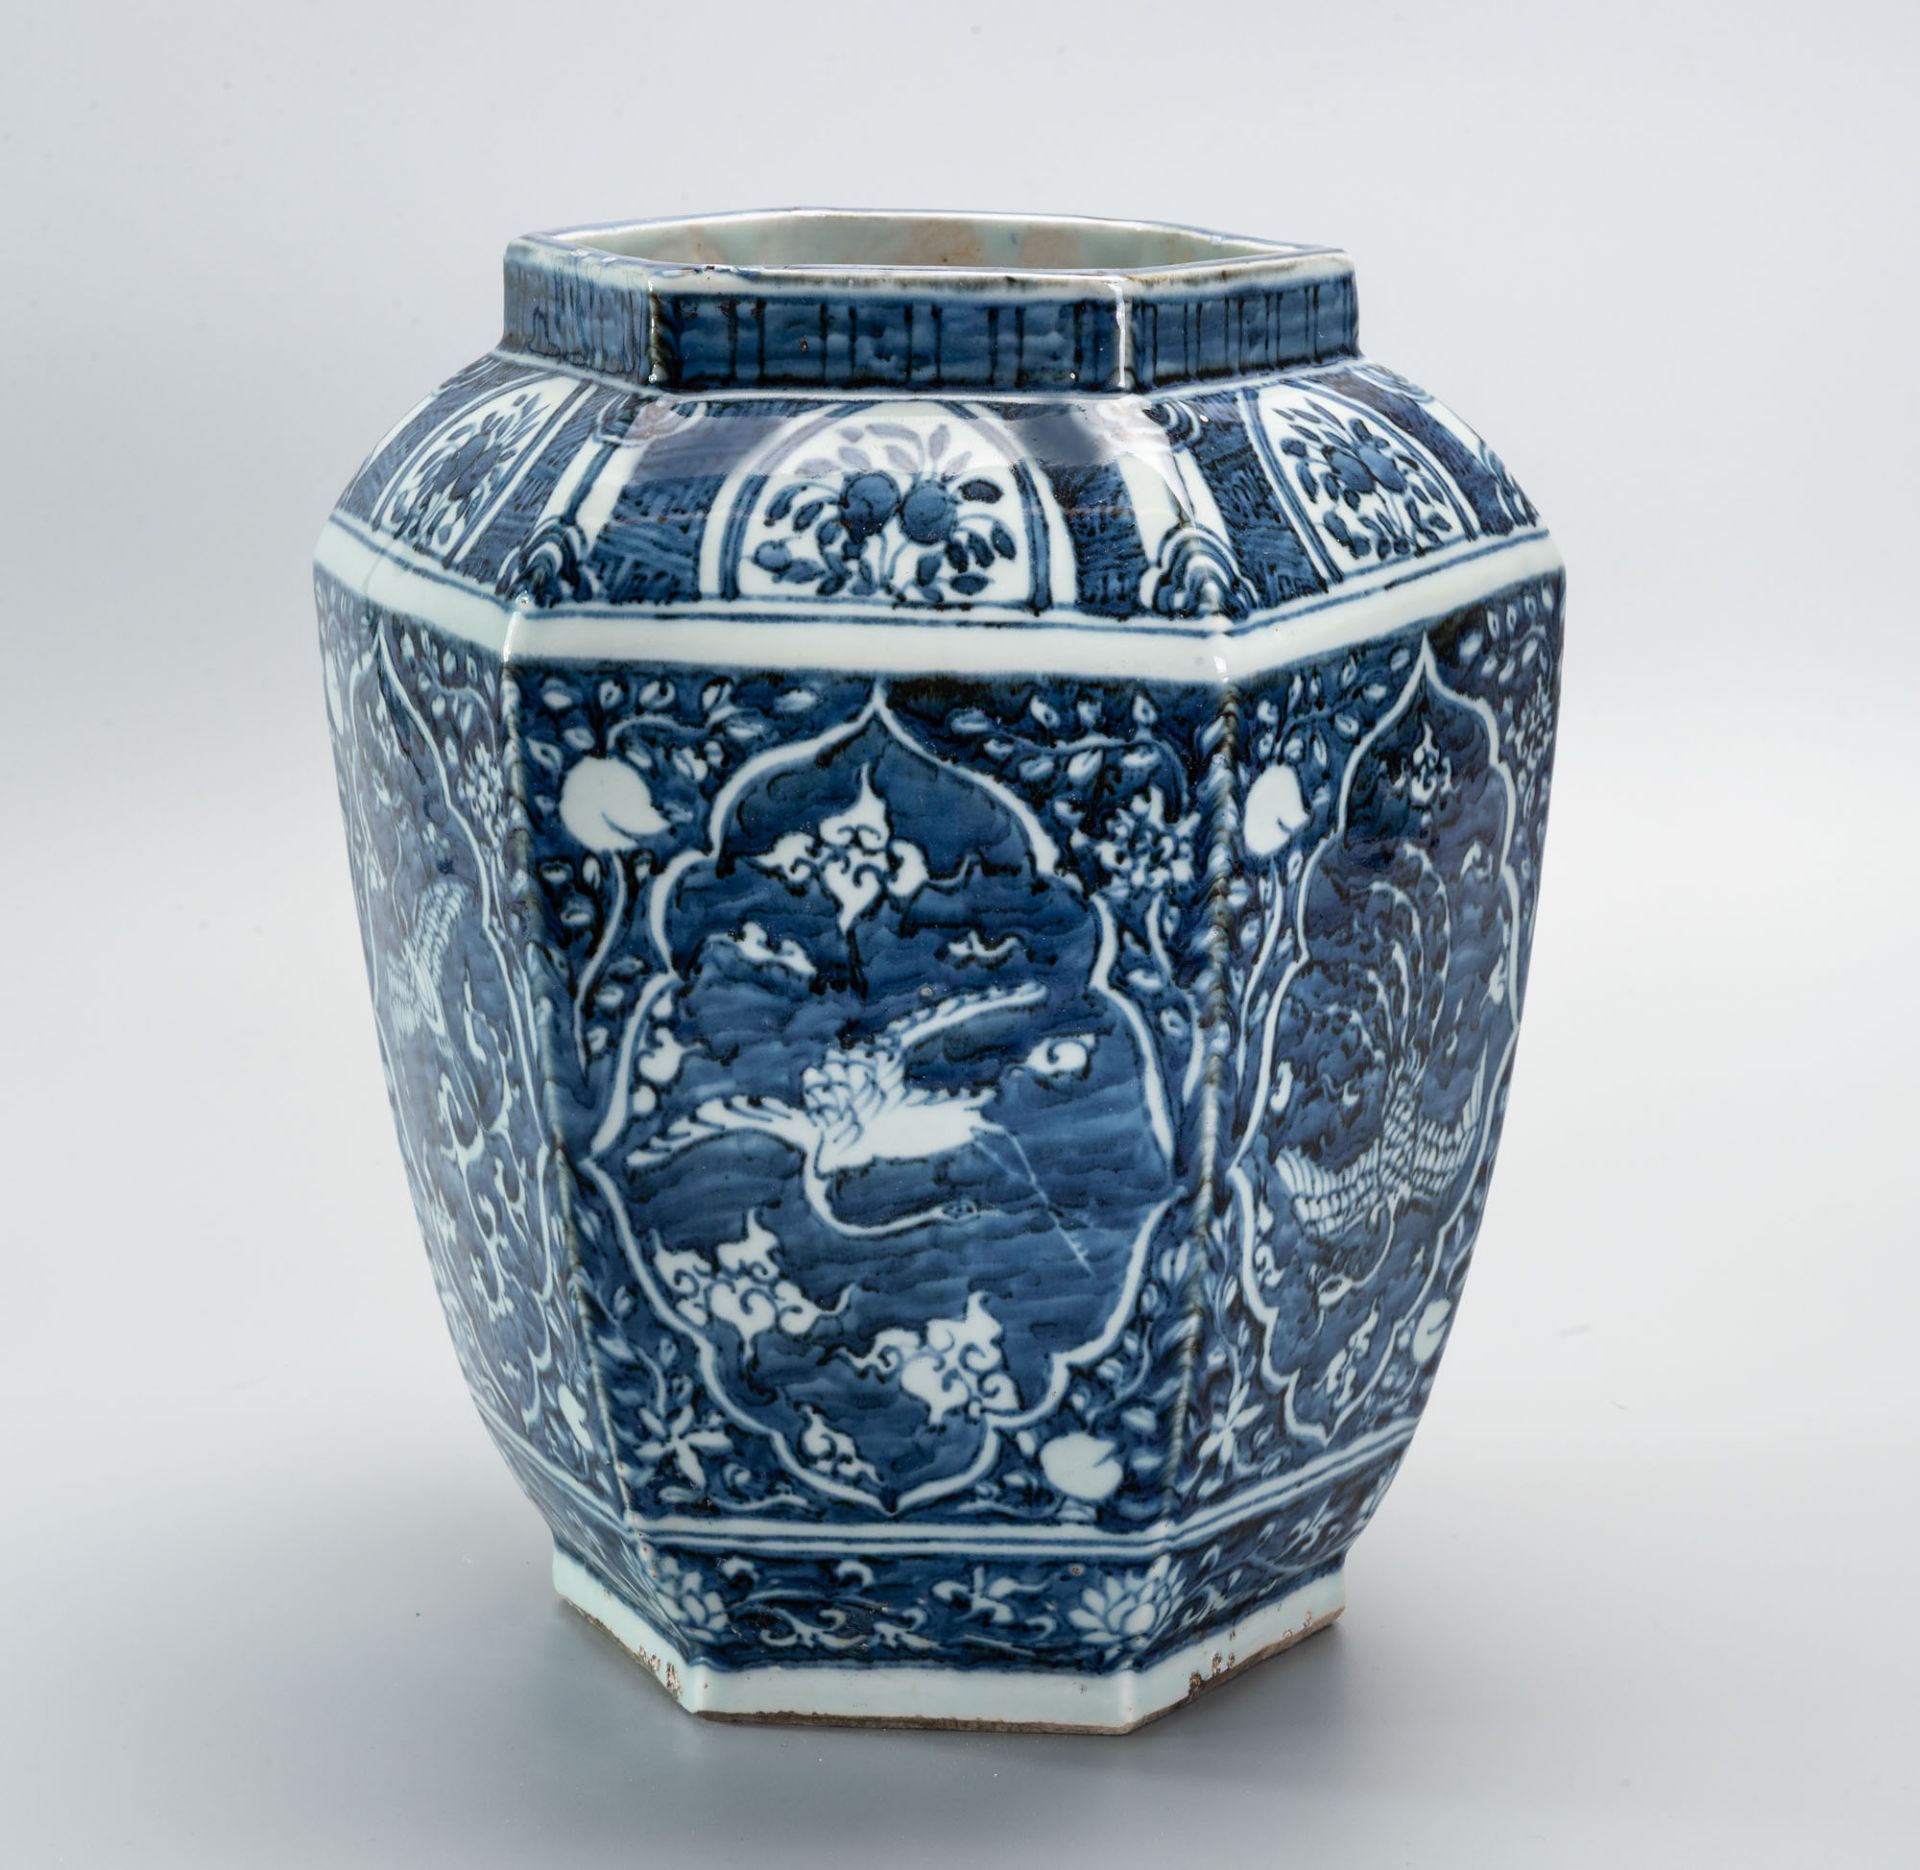 A Large Blue and White underglaze Porcelain Hexagonal Vase, China, 17th Century